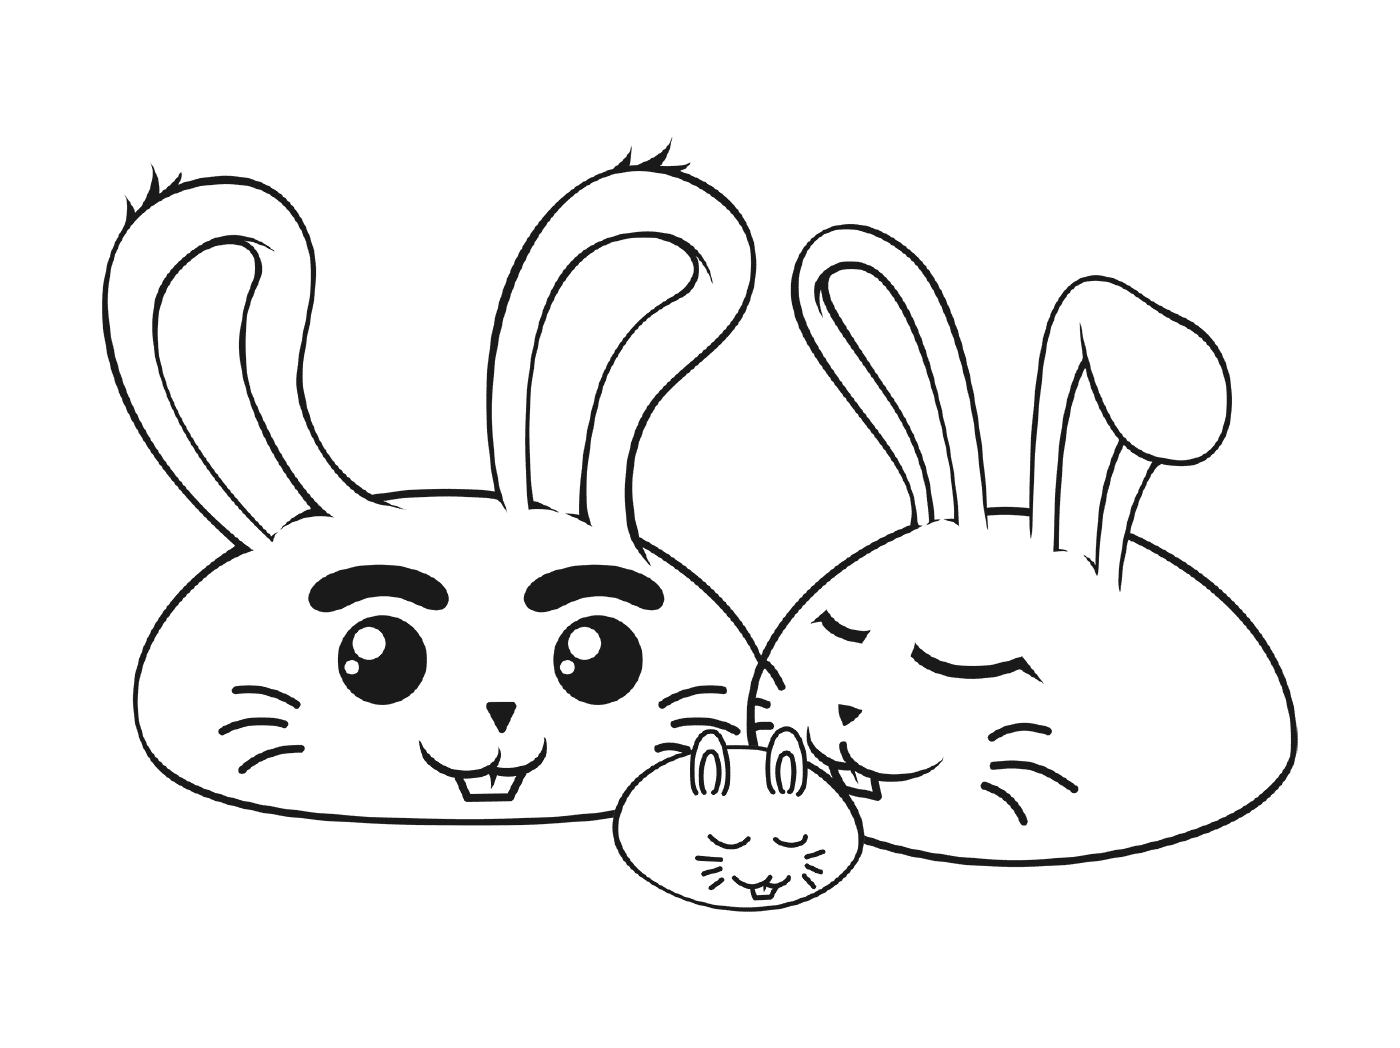  खरगोश का परिवार 